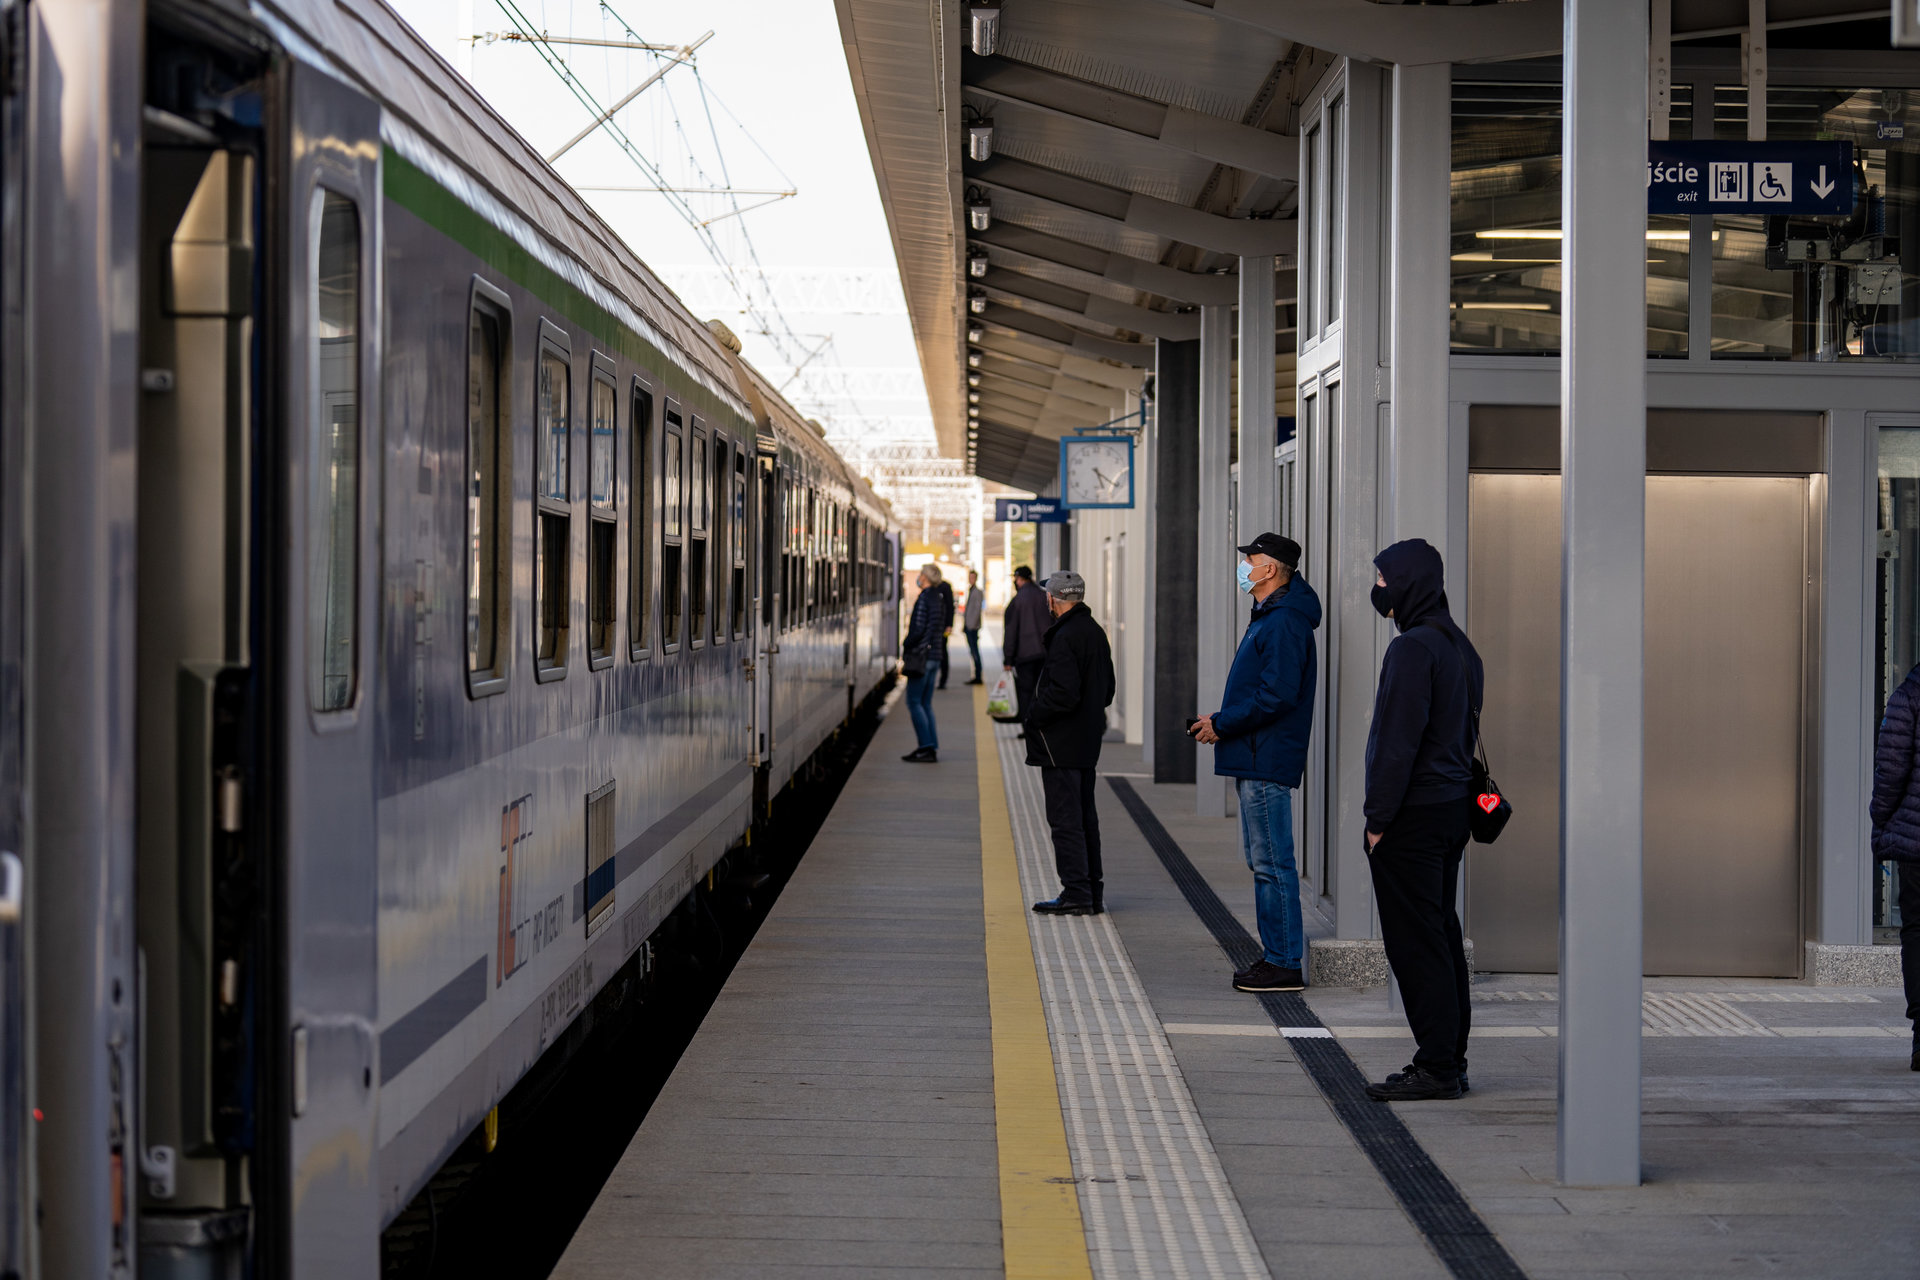 Korekta rozkładu jazdy pociągów obowiązuje od 3 września do 12 listopada (fot. Szymon Grochowski / PKP PLK)